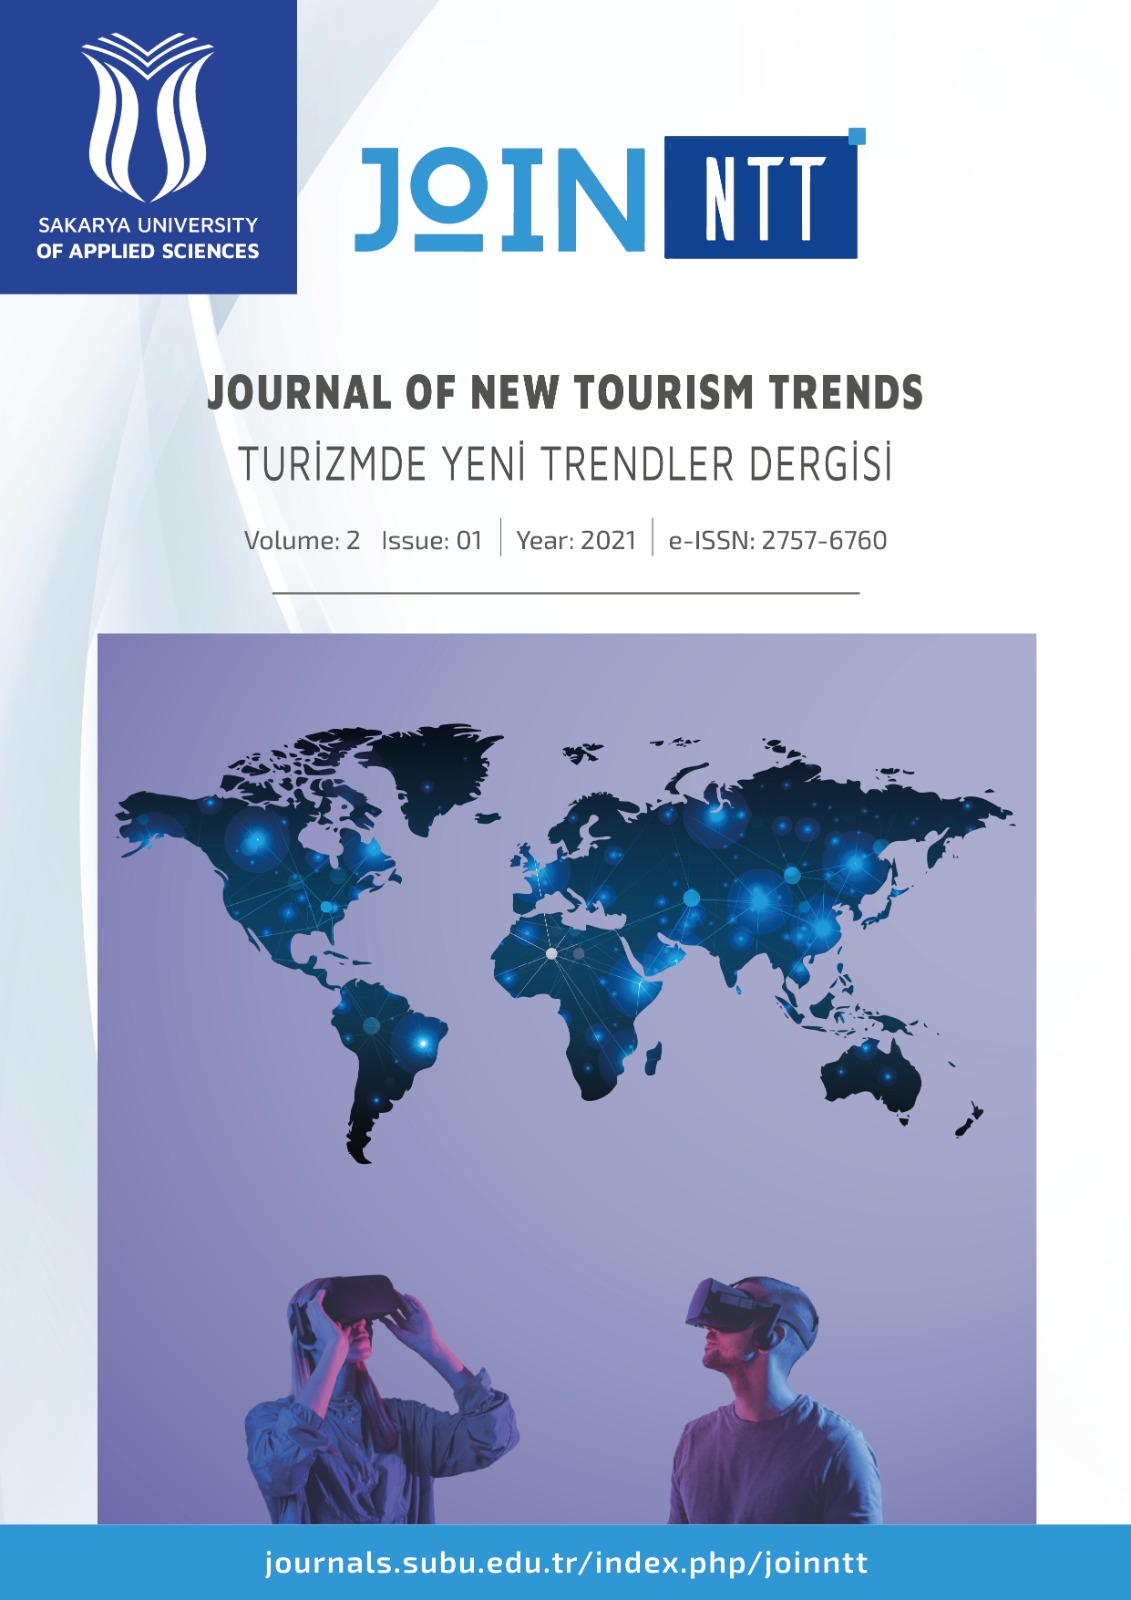 Turizmde Yeni Trendler Dergisi